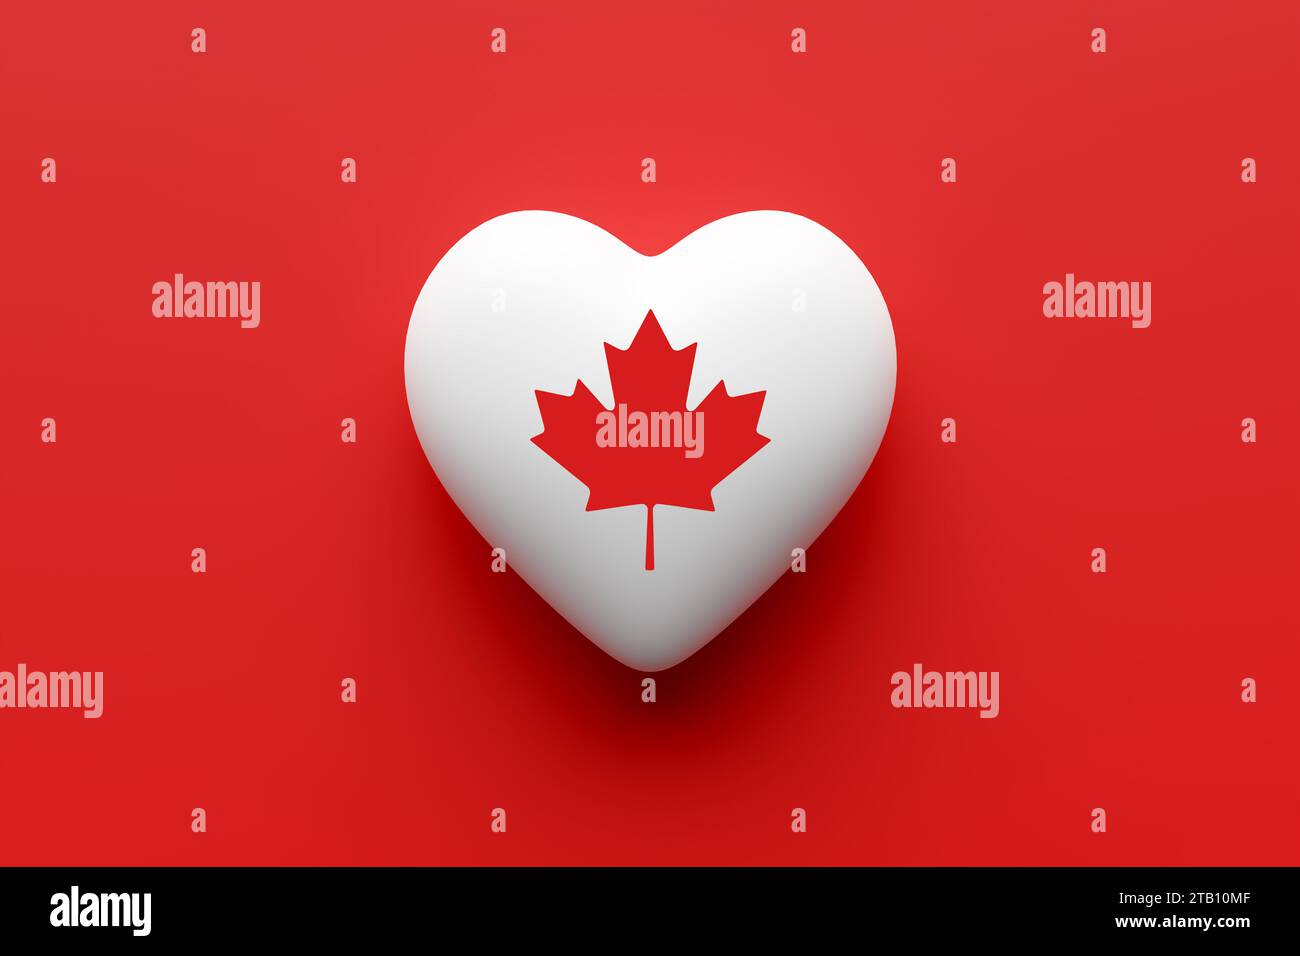 Drapeau canadien sur une forme de coeur sur fond rouge. Symbole national canadien feuille d'érable. Patriotisme canadien, amour, respect et fierté. Rendu 3D. Banque D'Images